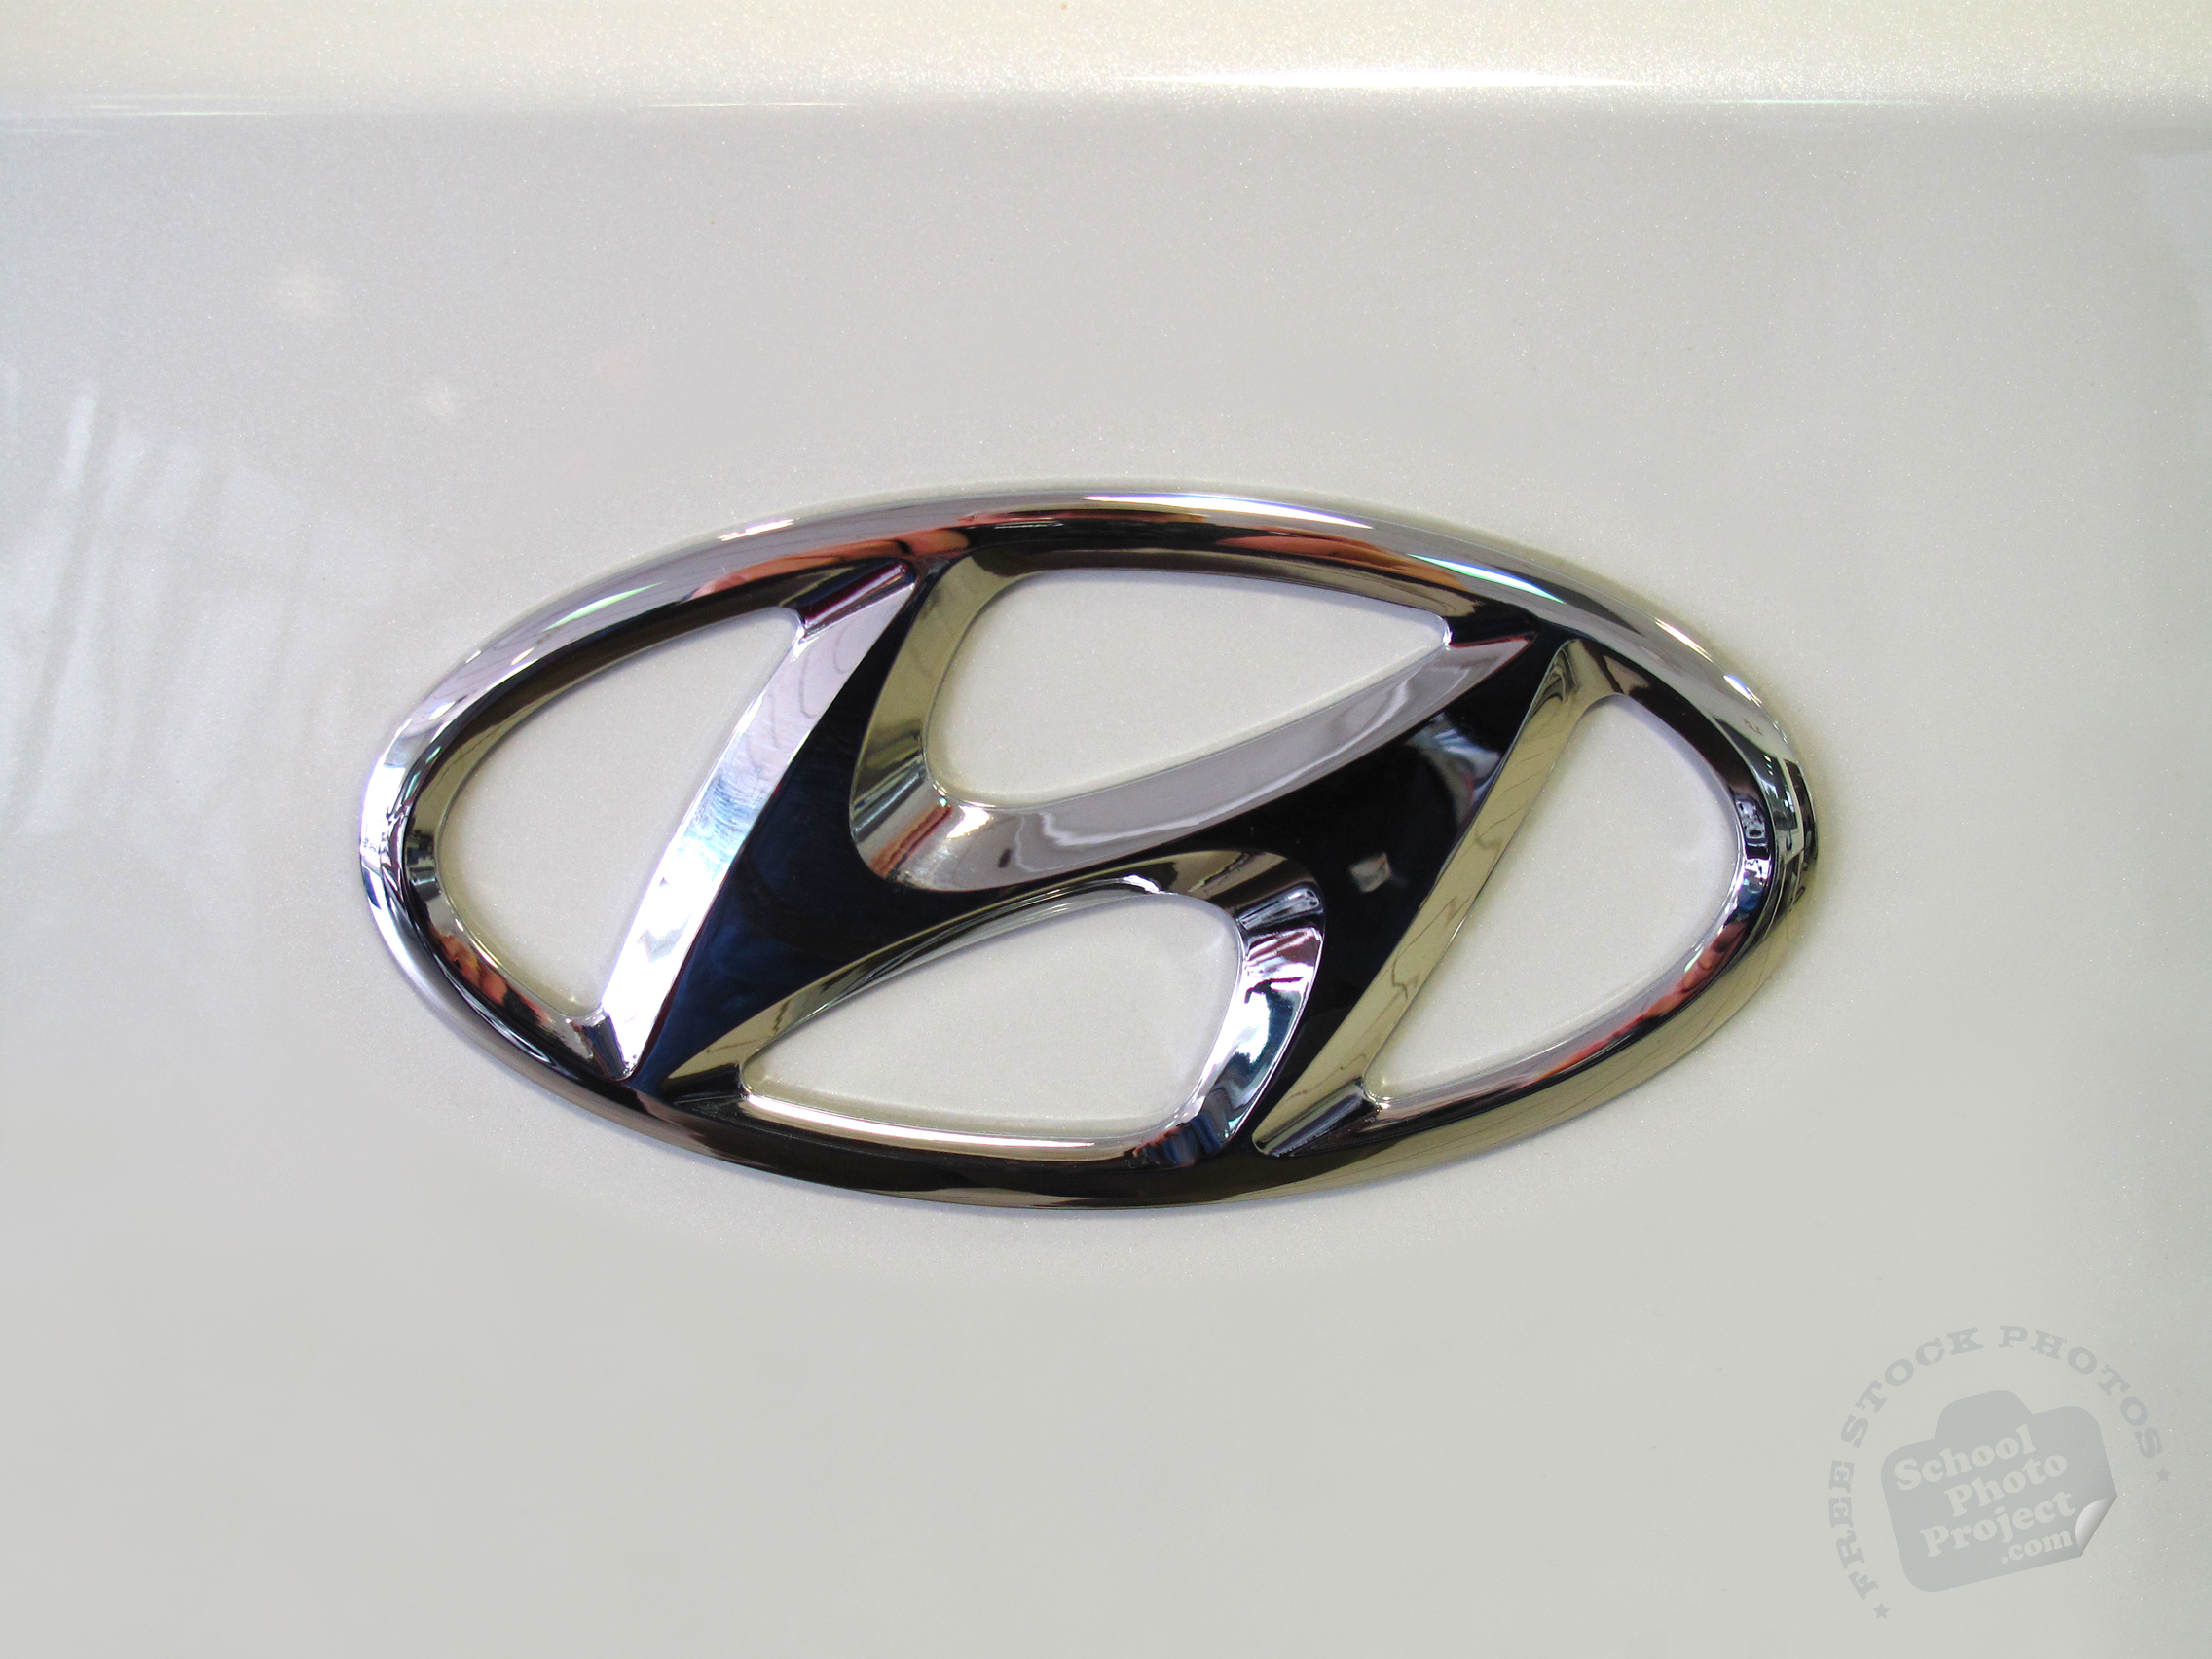 FREE Hyundai Logo, Hyundai Car Brand, Famous Car Identity, Royalty-Free